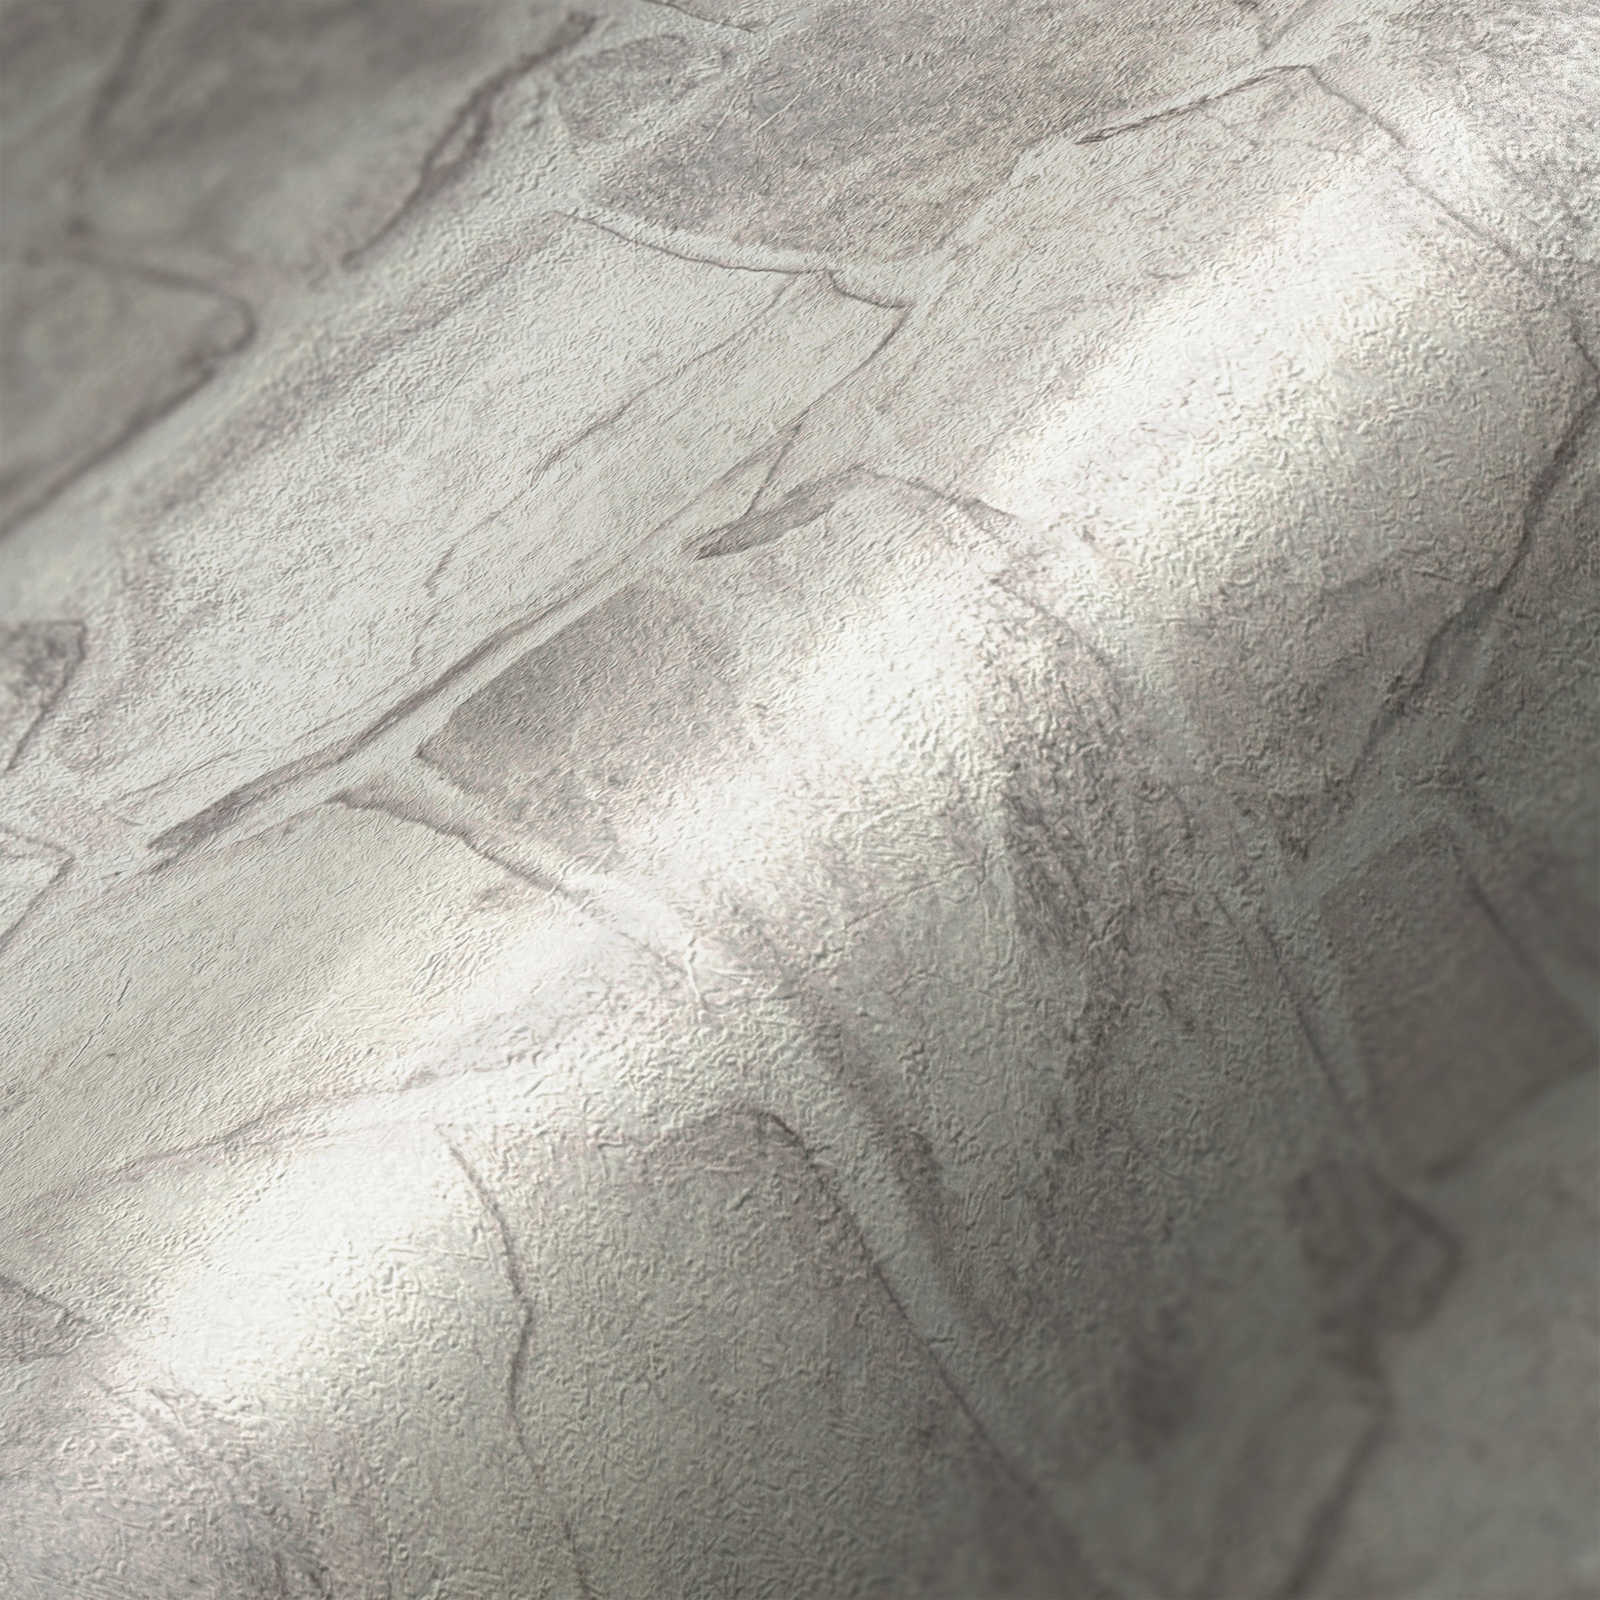             Carta da parati in tessuto non tessuto effetto pietra con effetto mattone 3D - grigio, bianco, grigio
        